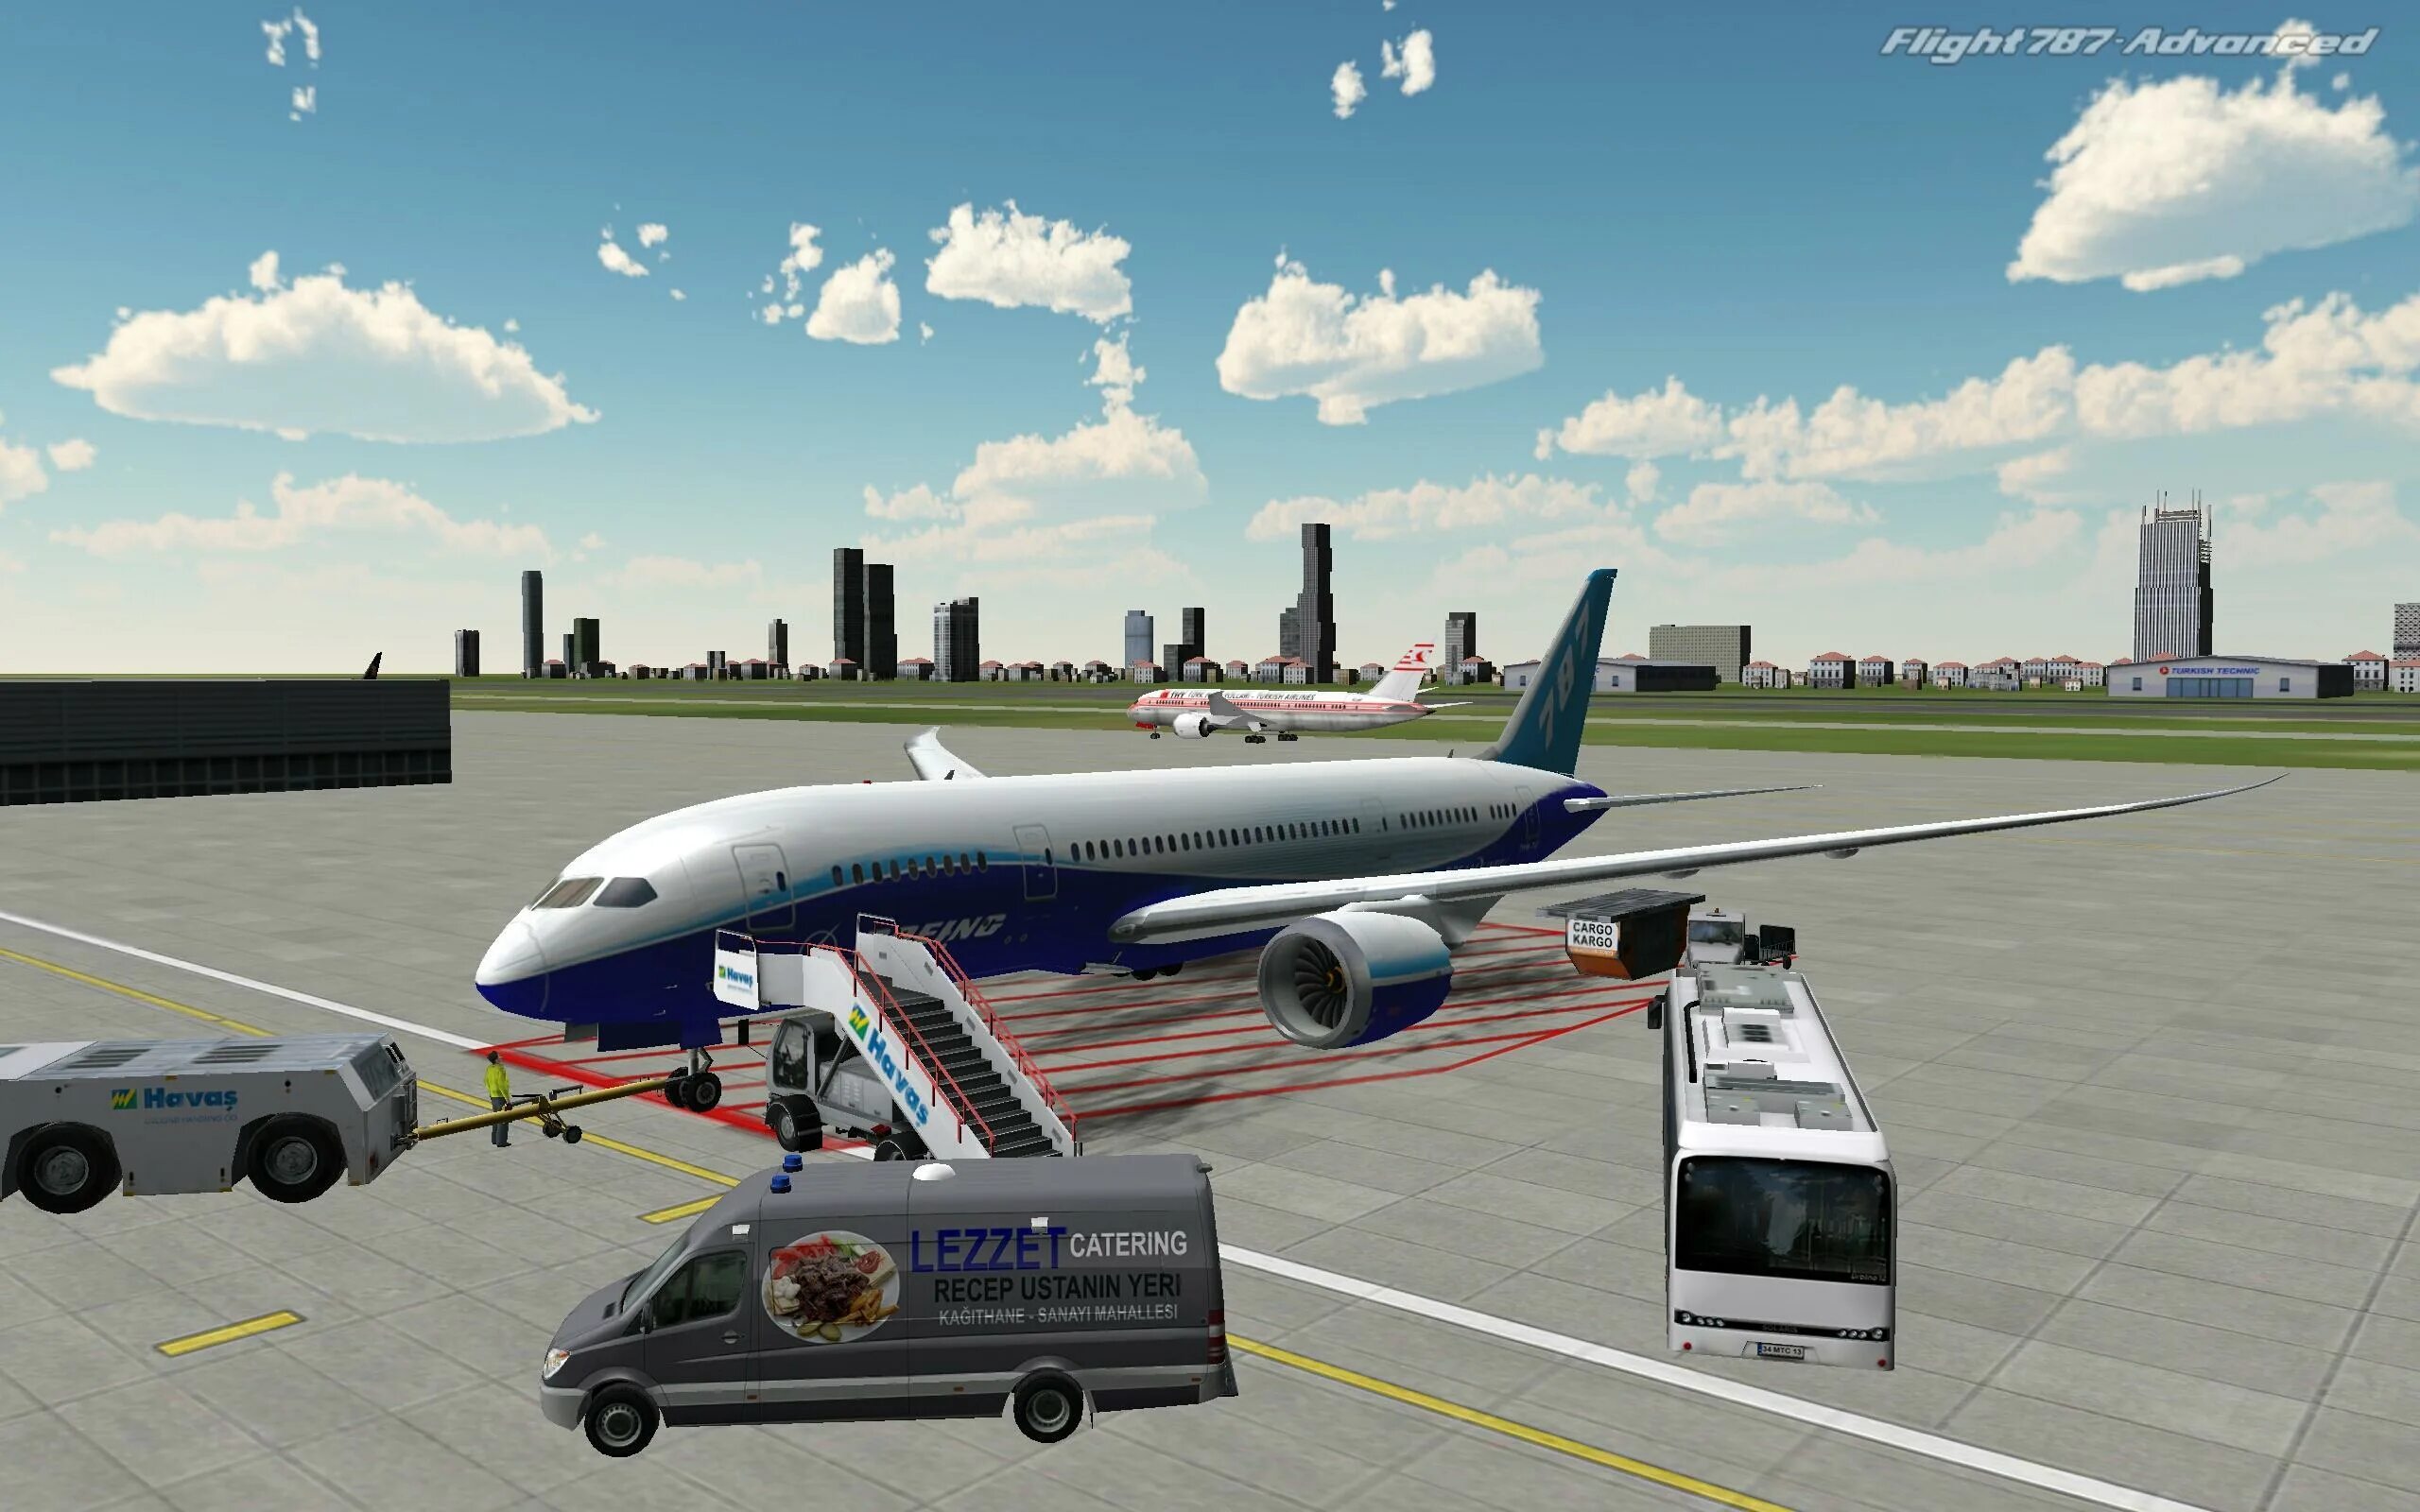 Flight 787 - Advanced. Реал Флайт симулятор. Авиасимулятор ВДНХ. Симулятор самолета пассажирского. Компьютерные игры самолетов